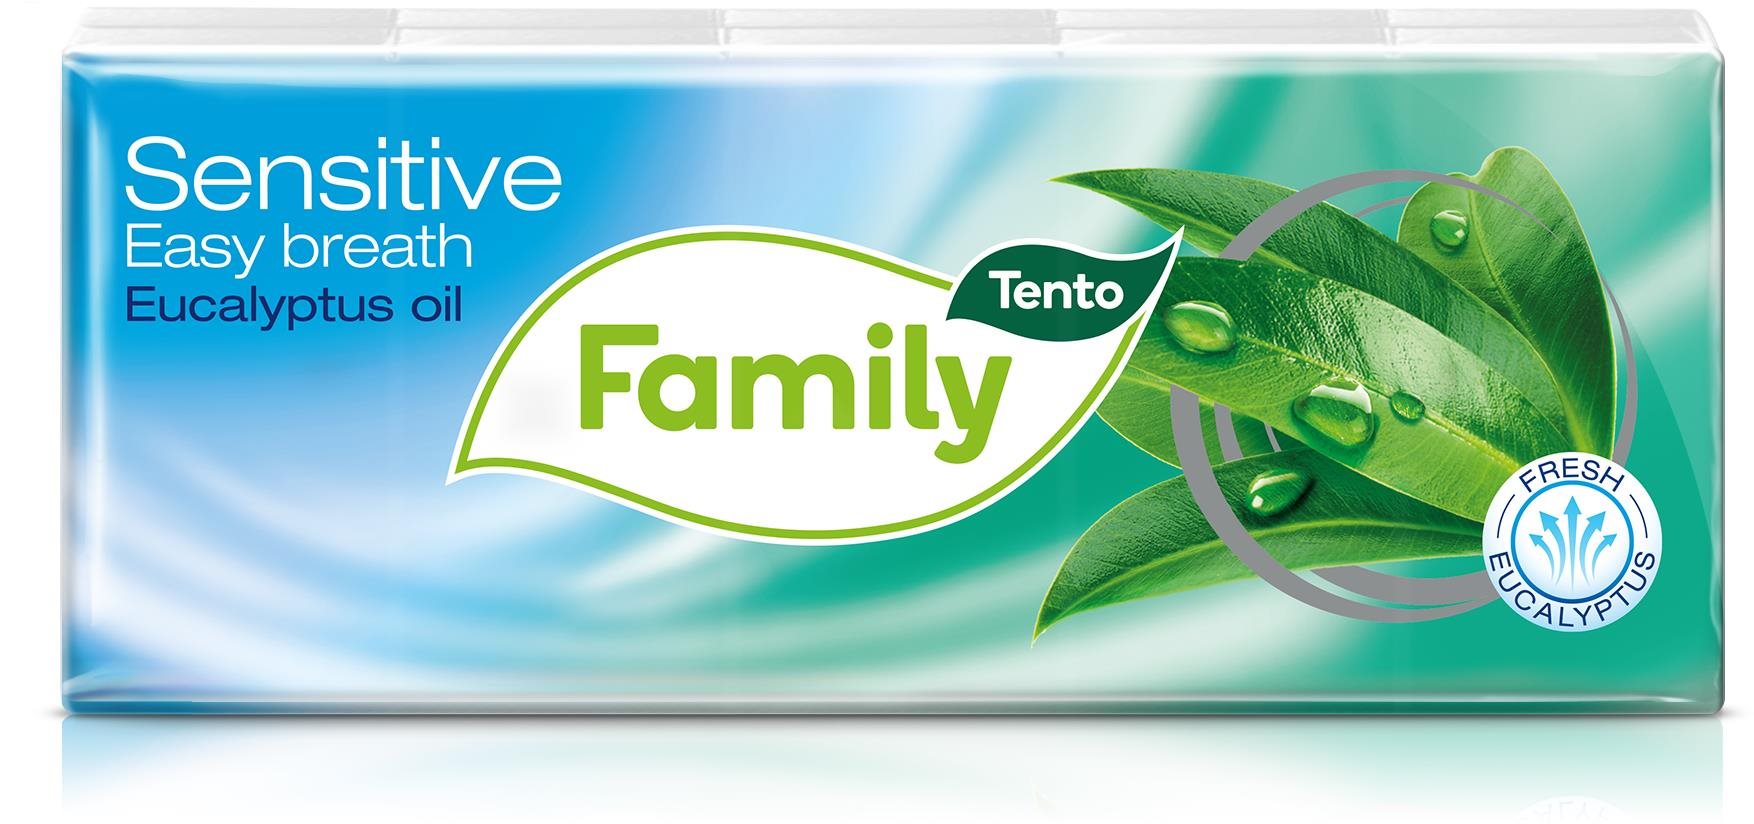 Papírzsebkendő TENTO Family Eucalyptus 10x 10 db